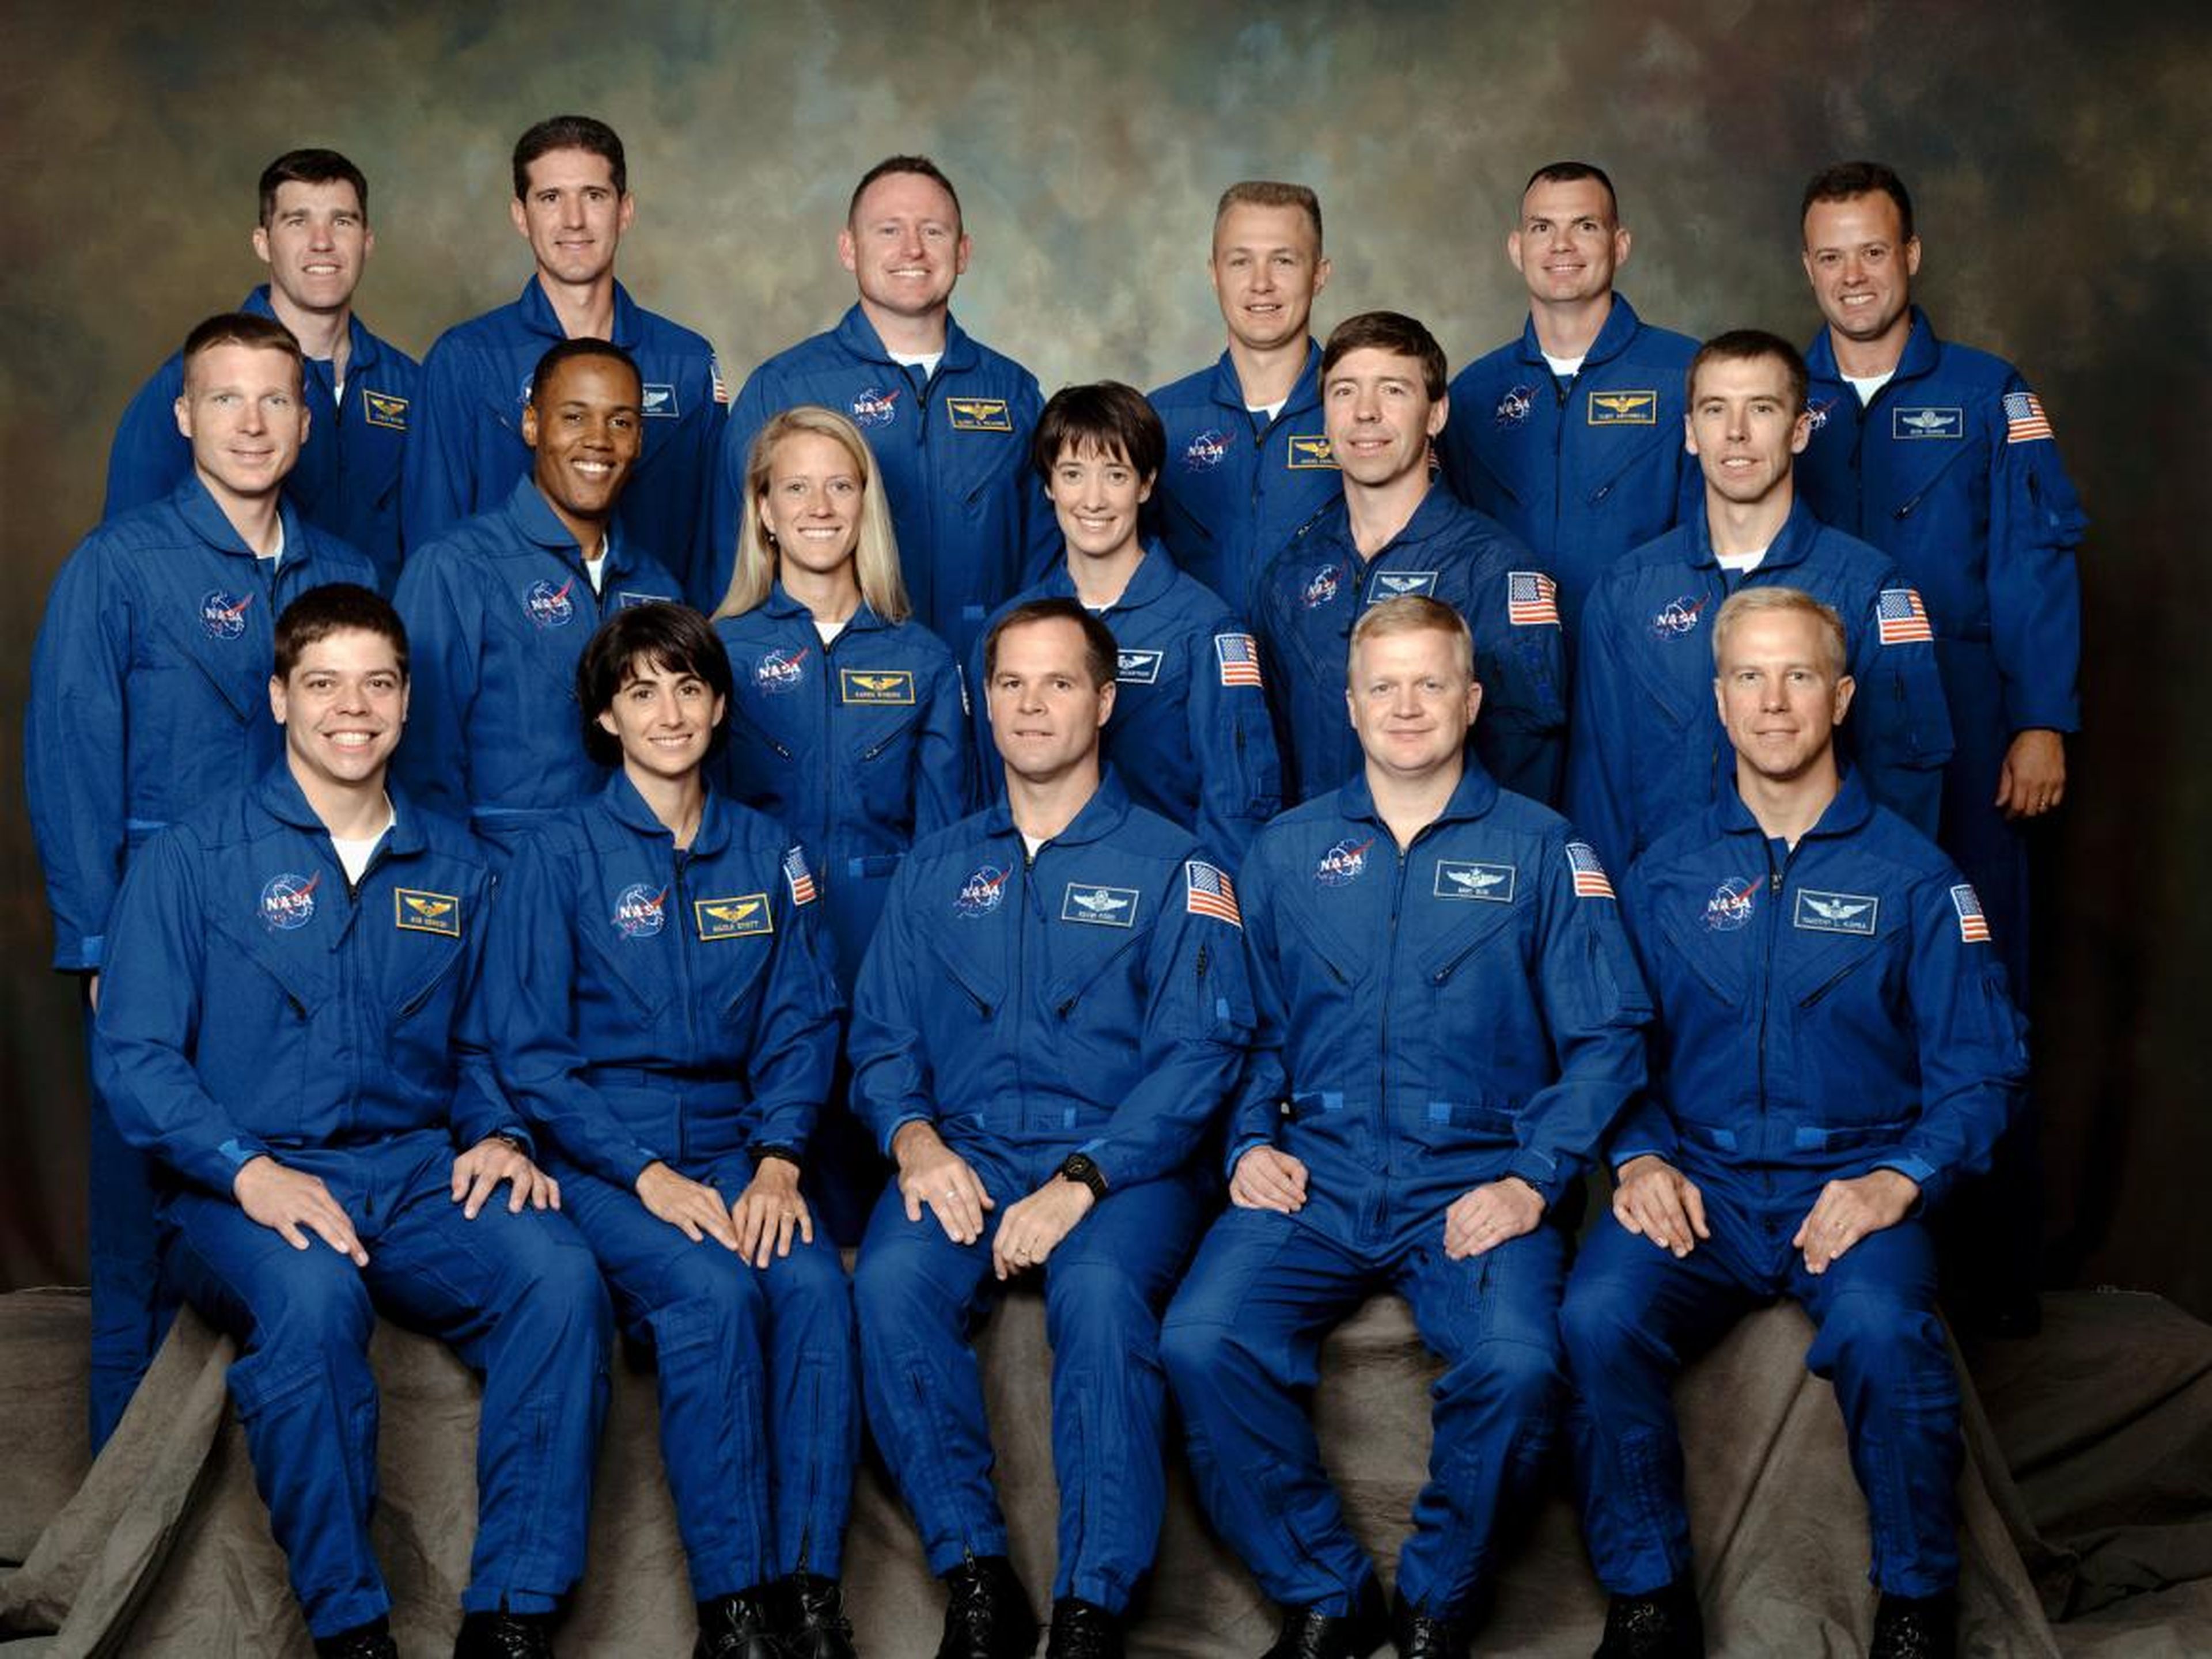 Candidatos a astronautas de la NASA en el 2000 donde se encontraban Behnken y Hurley.